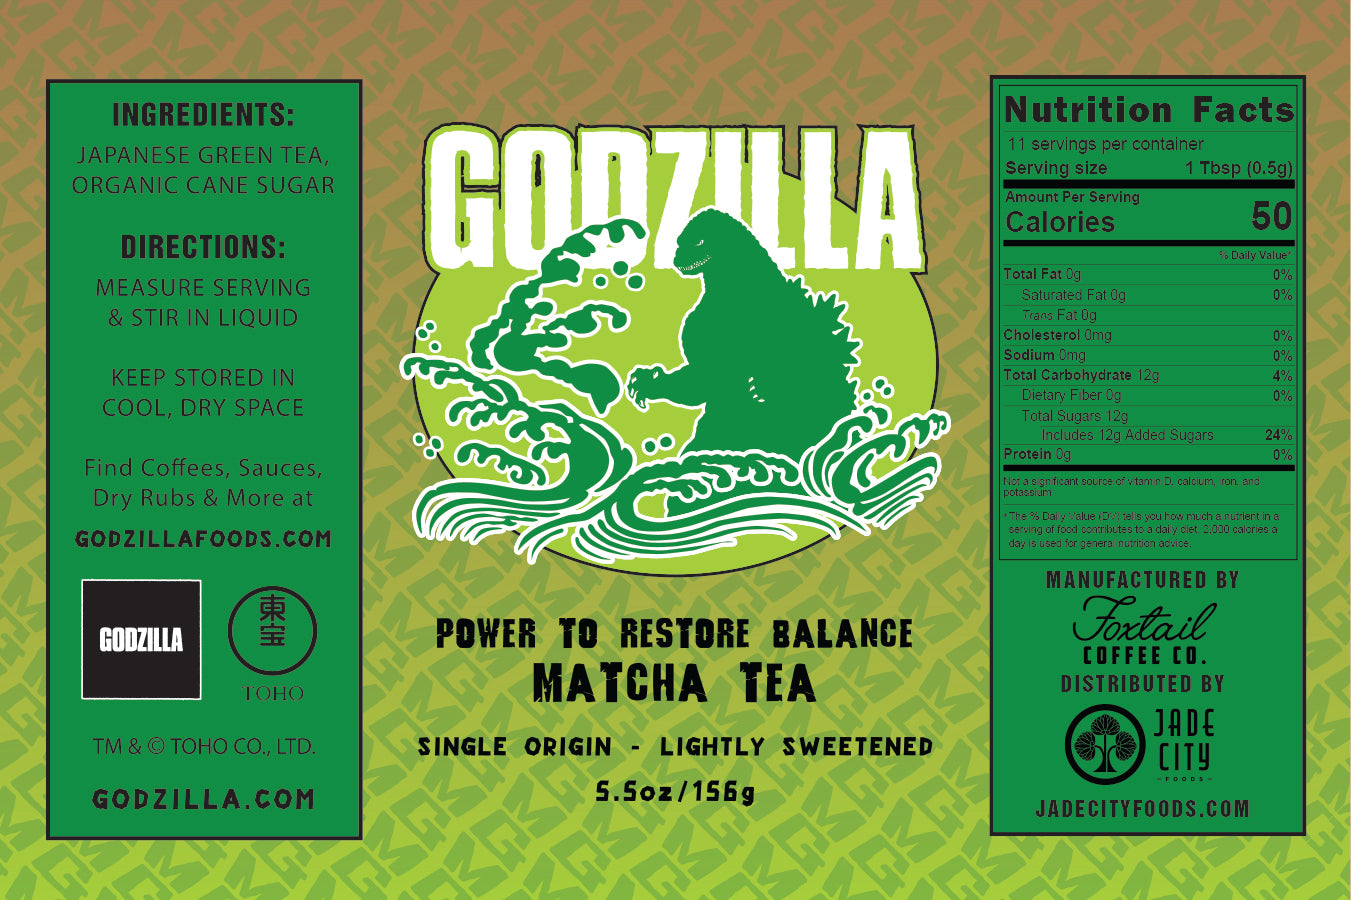 Godzilla's Power to Restore Balance : Matcha Tea